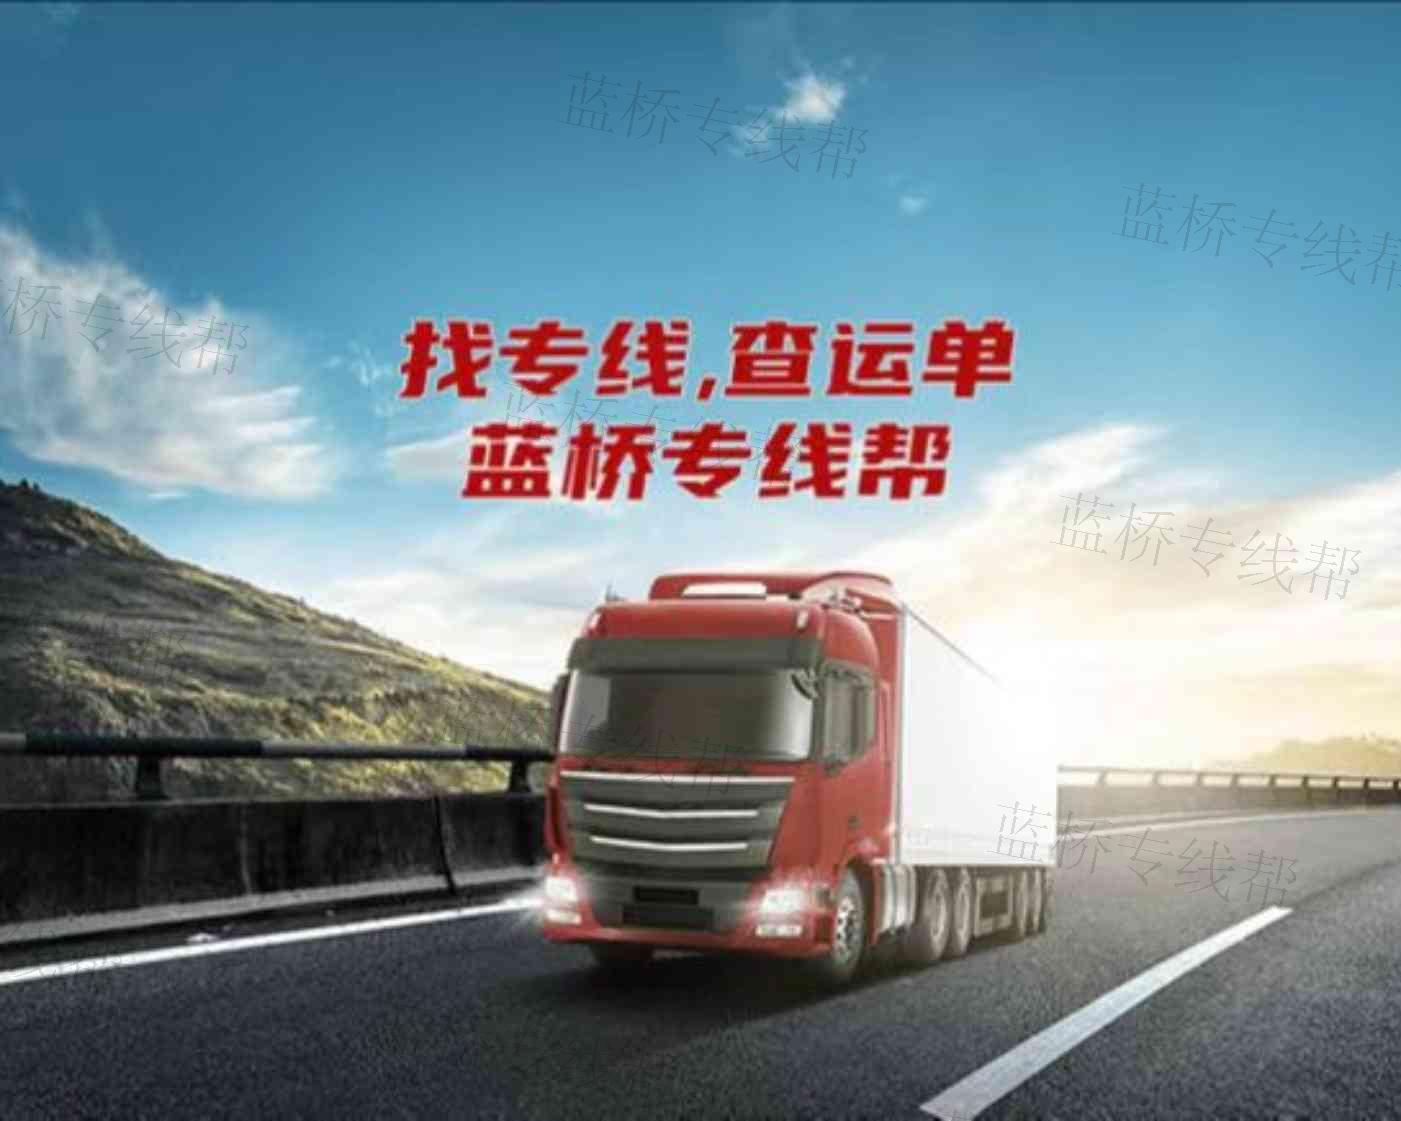 广州奥申物流有限公司贵阳线路